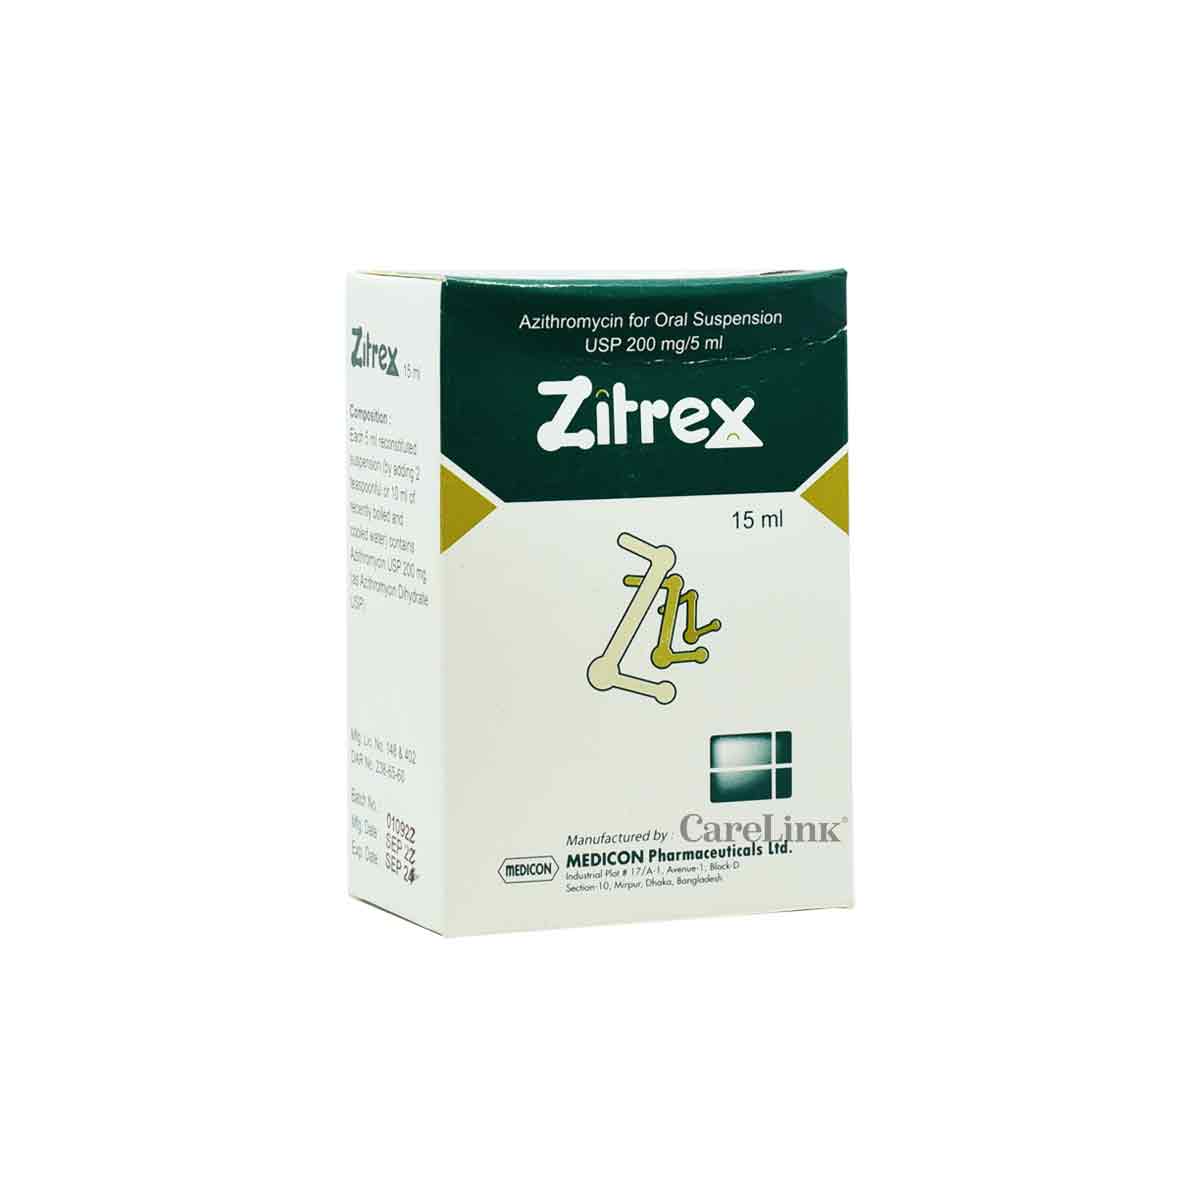 Buy Zitrex 15ml | Online Pharmacy in Sri Lanka | Carelink.lk